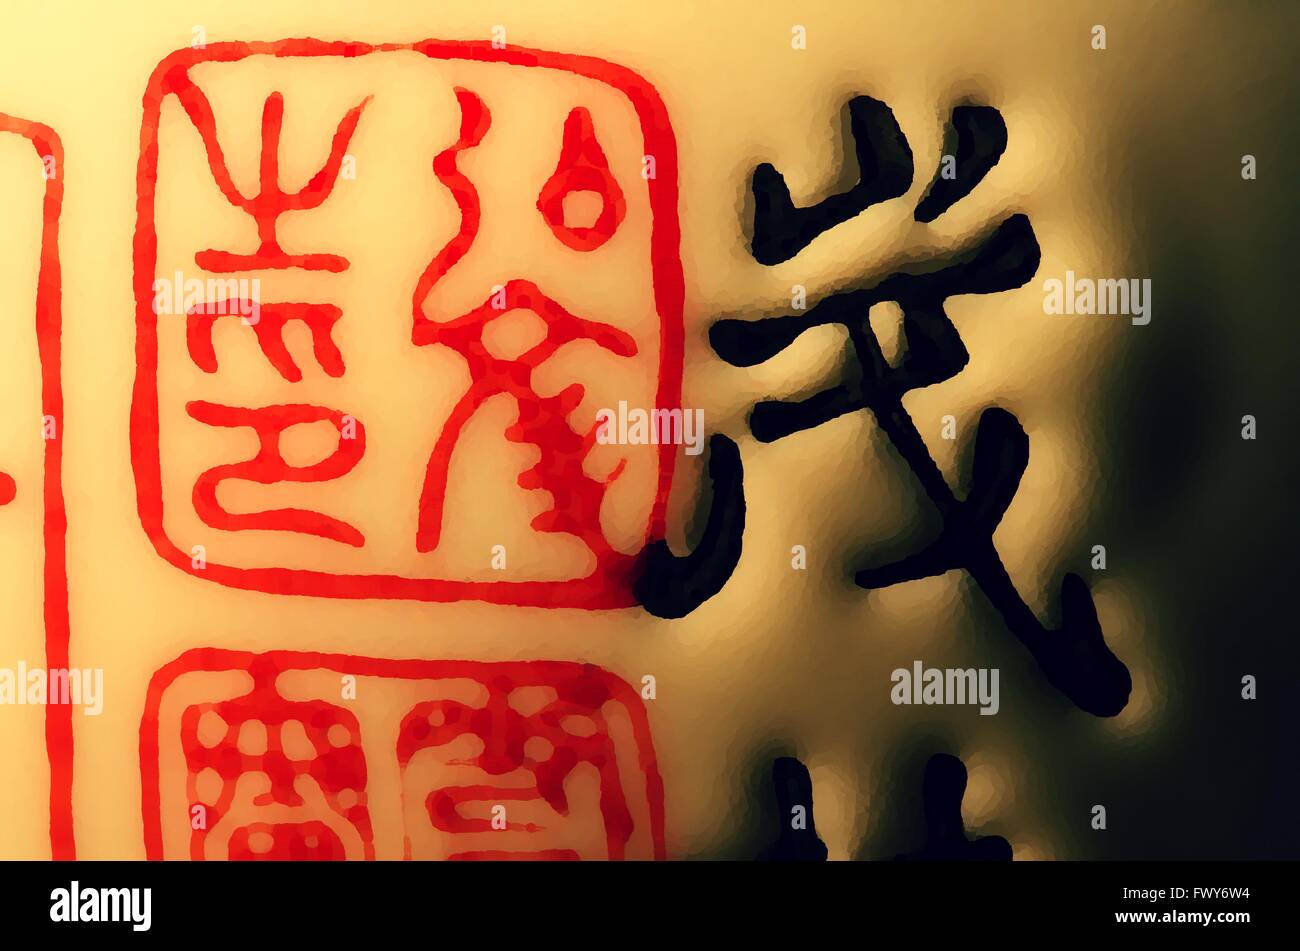 Black Chinese symbols on orange pattern background. Stock Photo